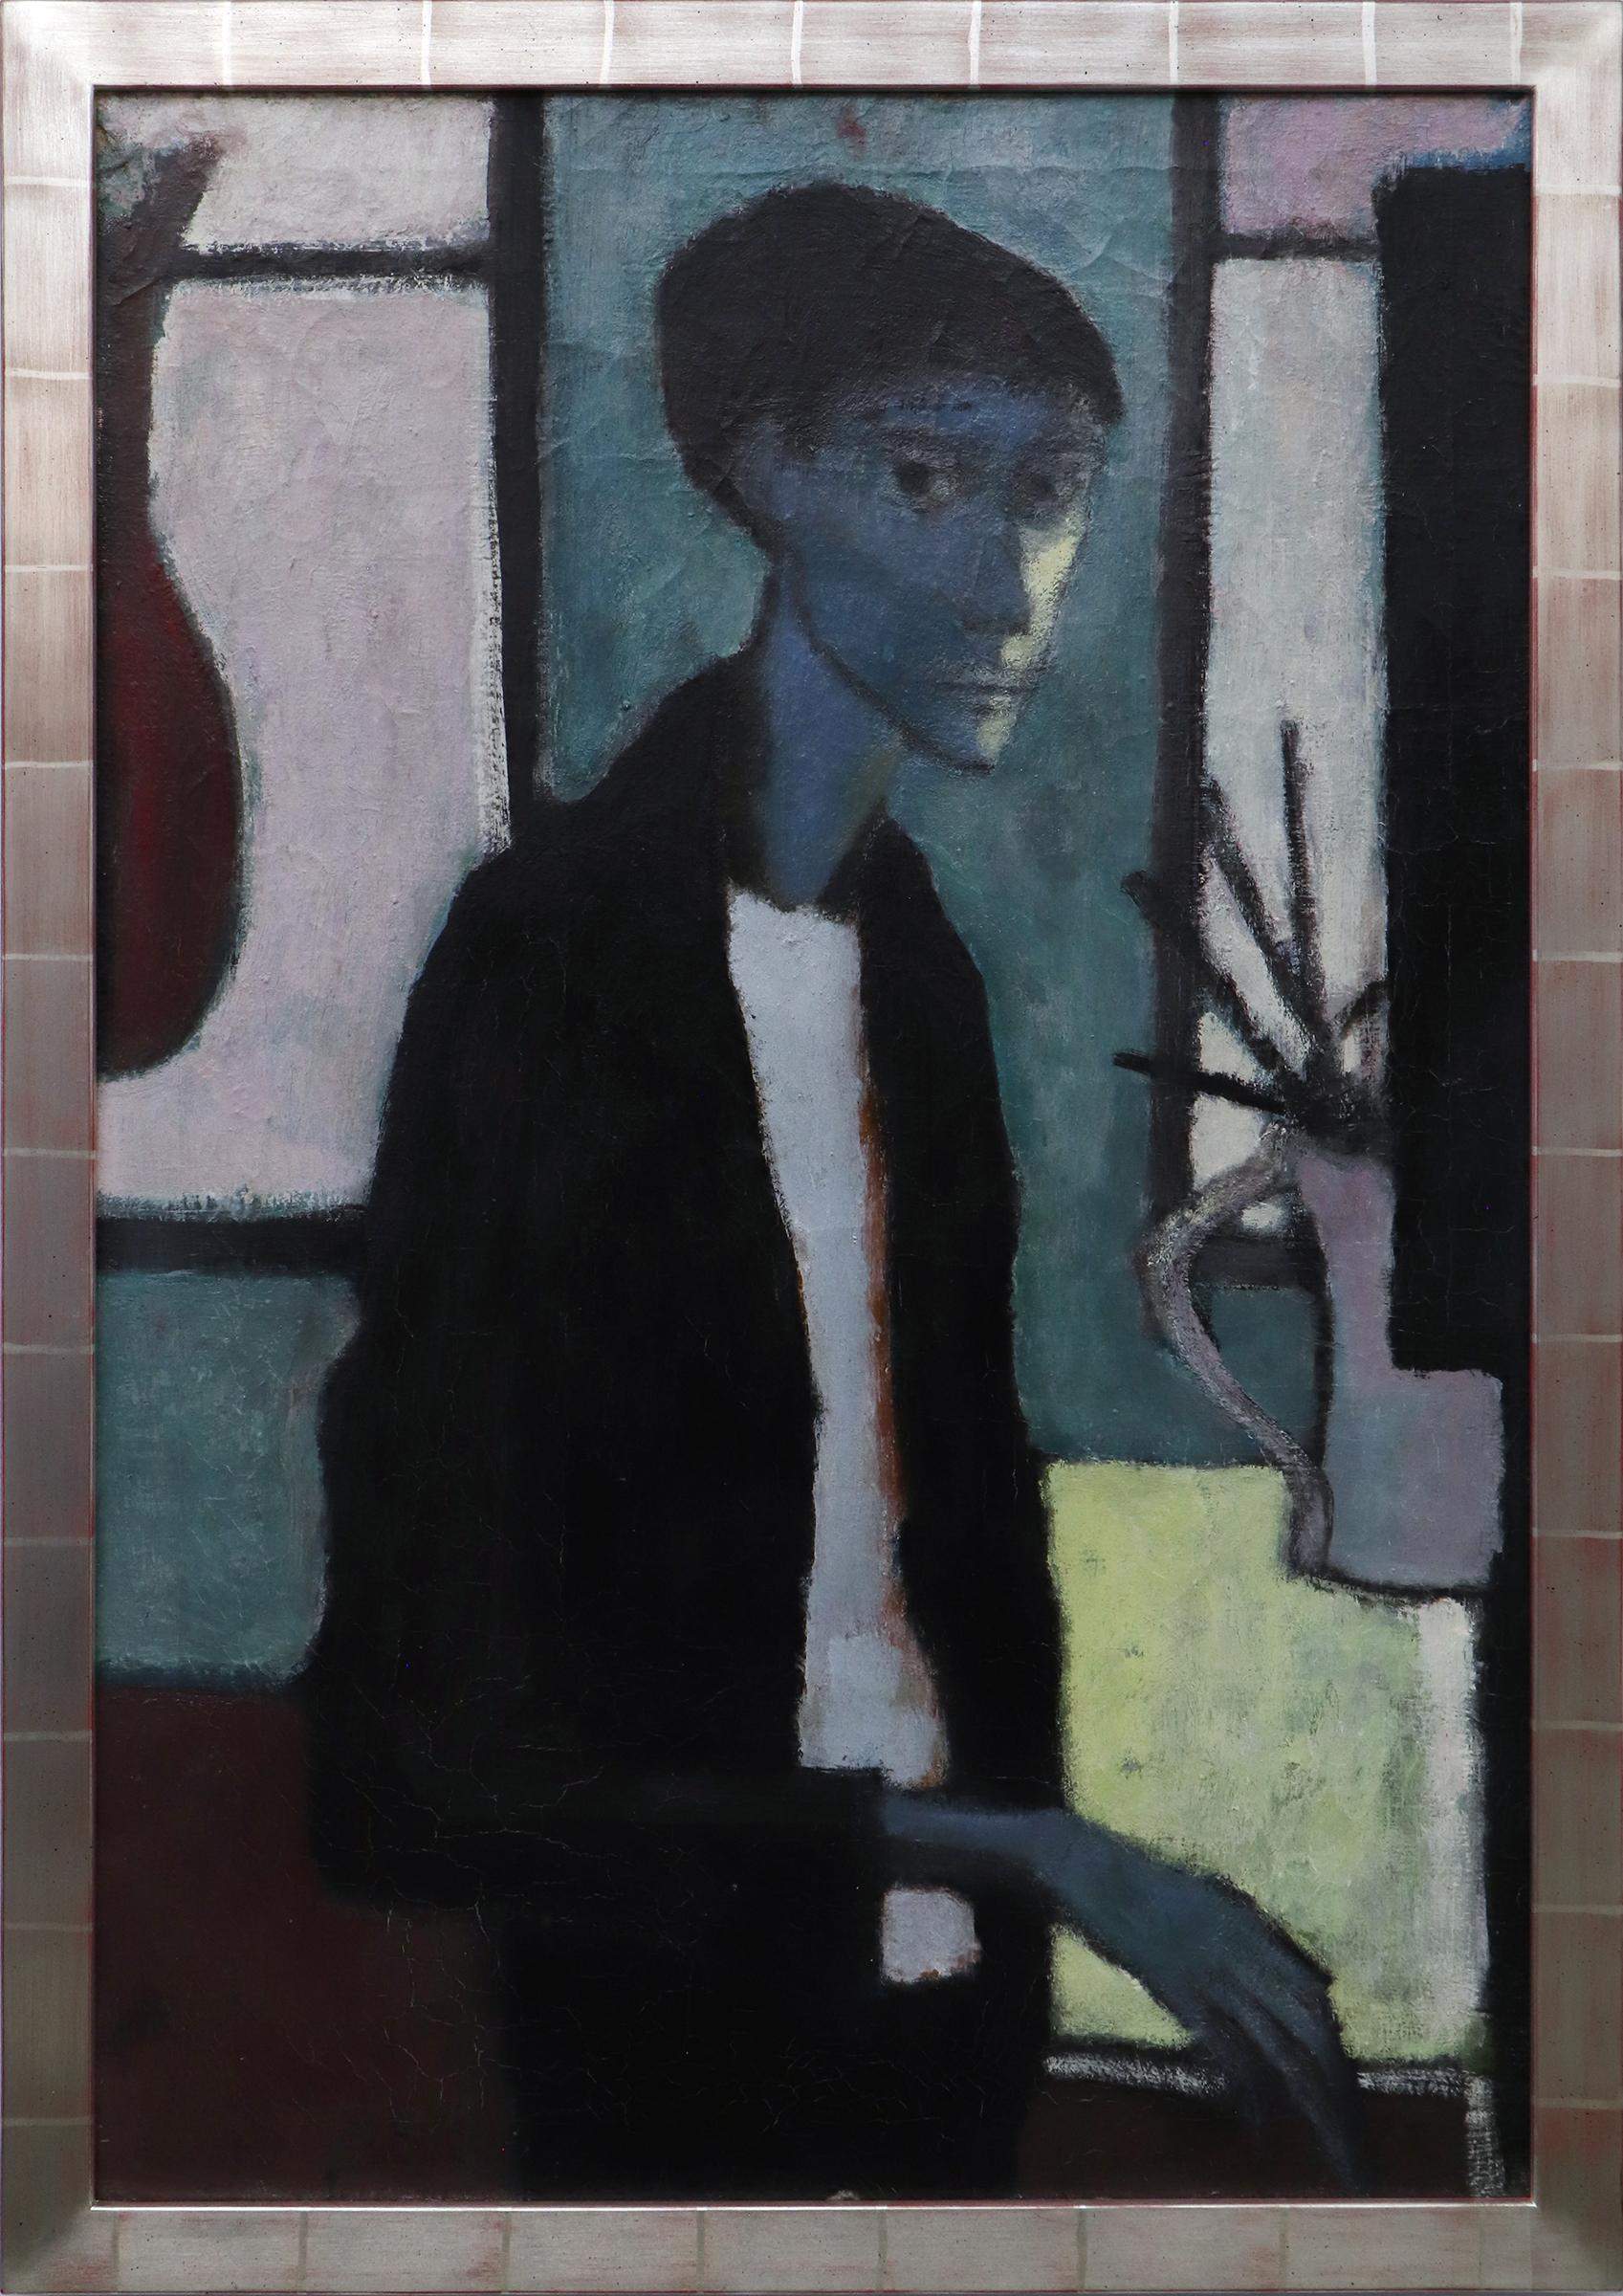 Peinture à l'huile d'un autoportrait expressionniste des années 1940 en bleu, vert et gris, intérieur